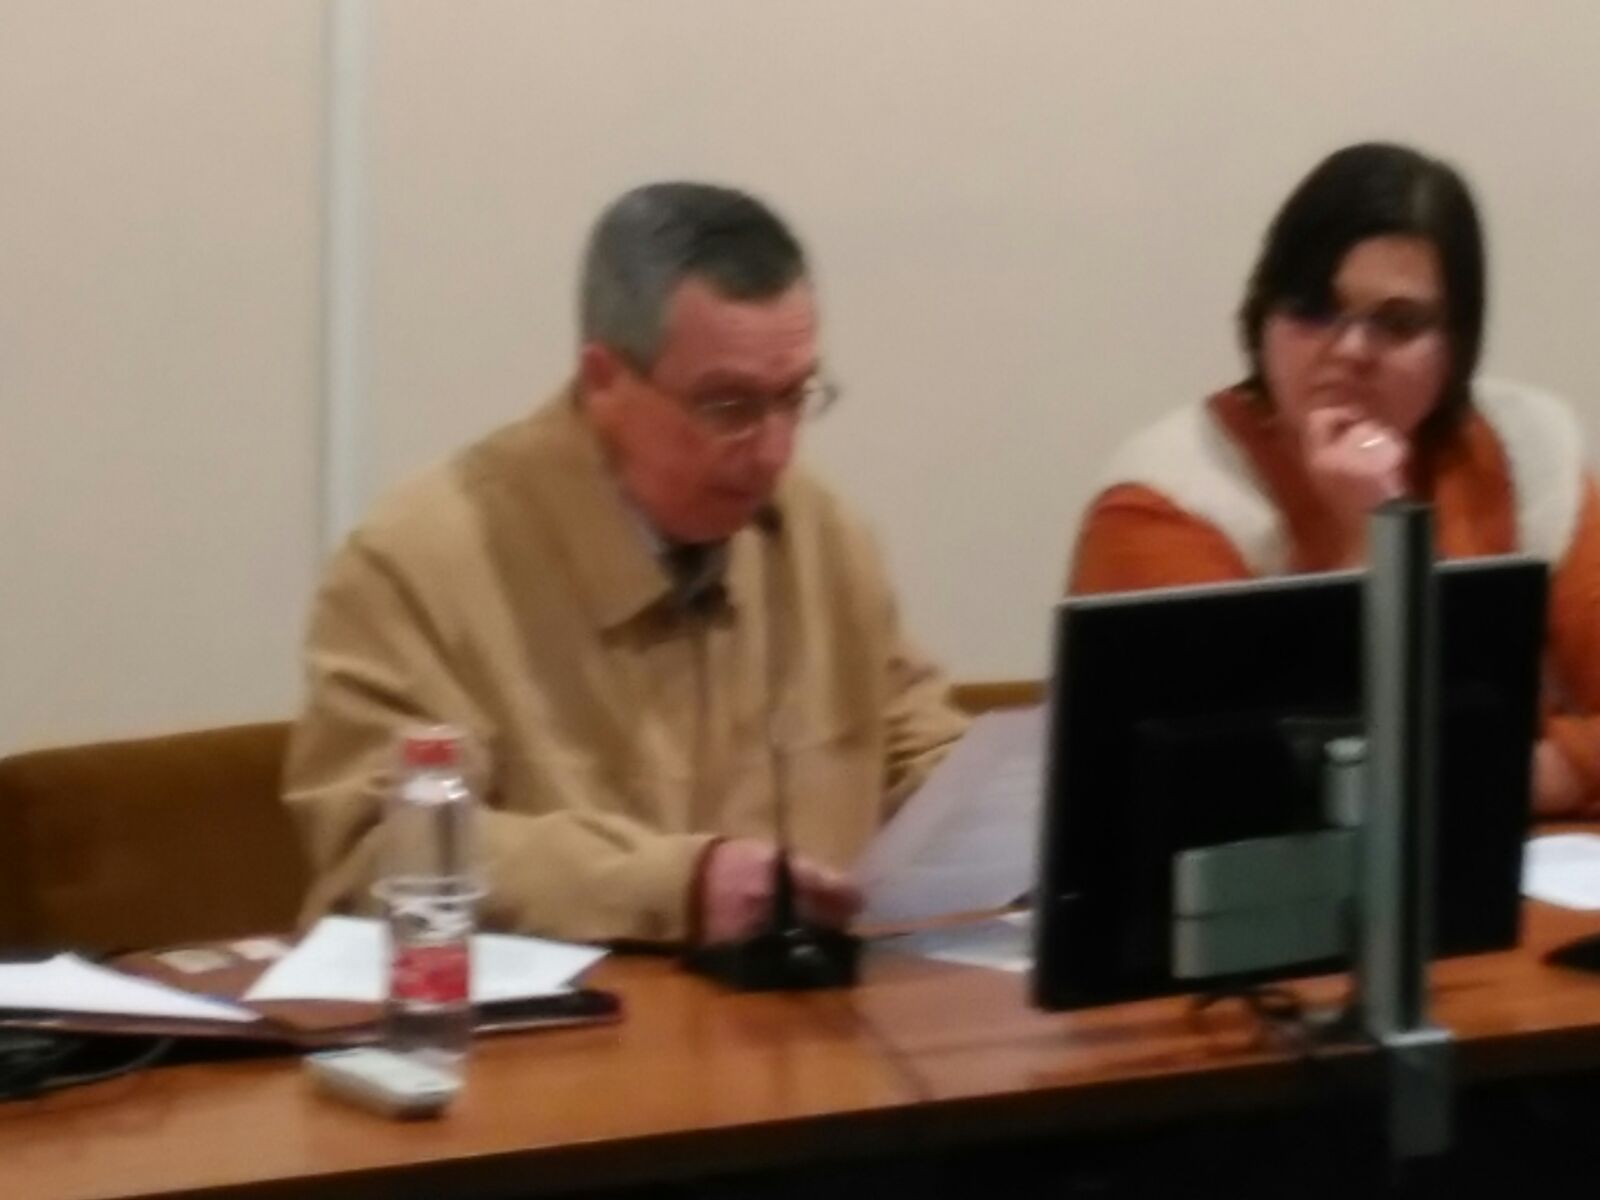 Imagen de los ponentes José María Hernández y Mireia Vidal i Quintero sentados durante el desarrollo de la tercera conferencia del ciclo